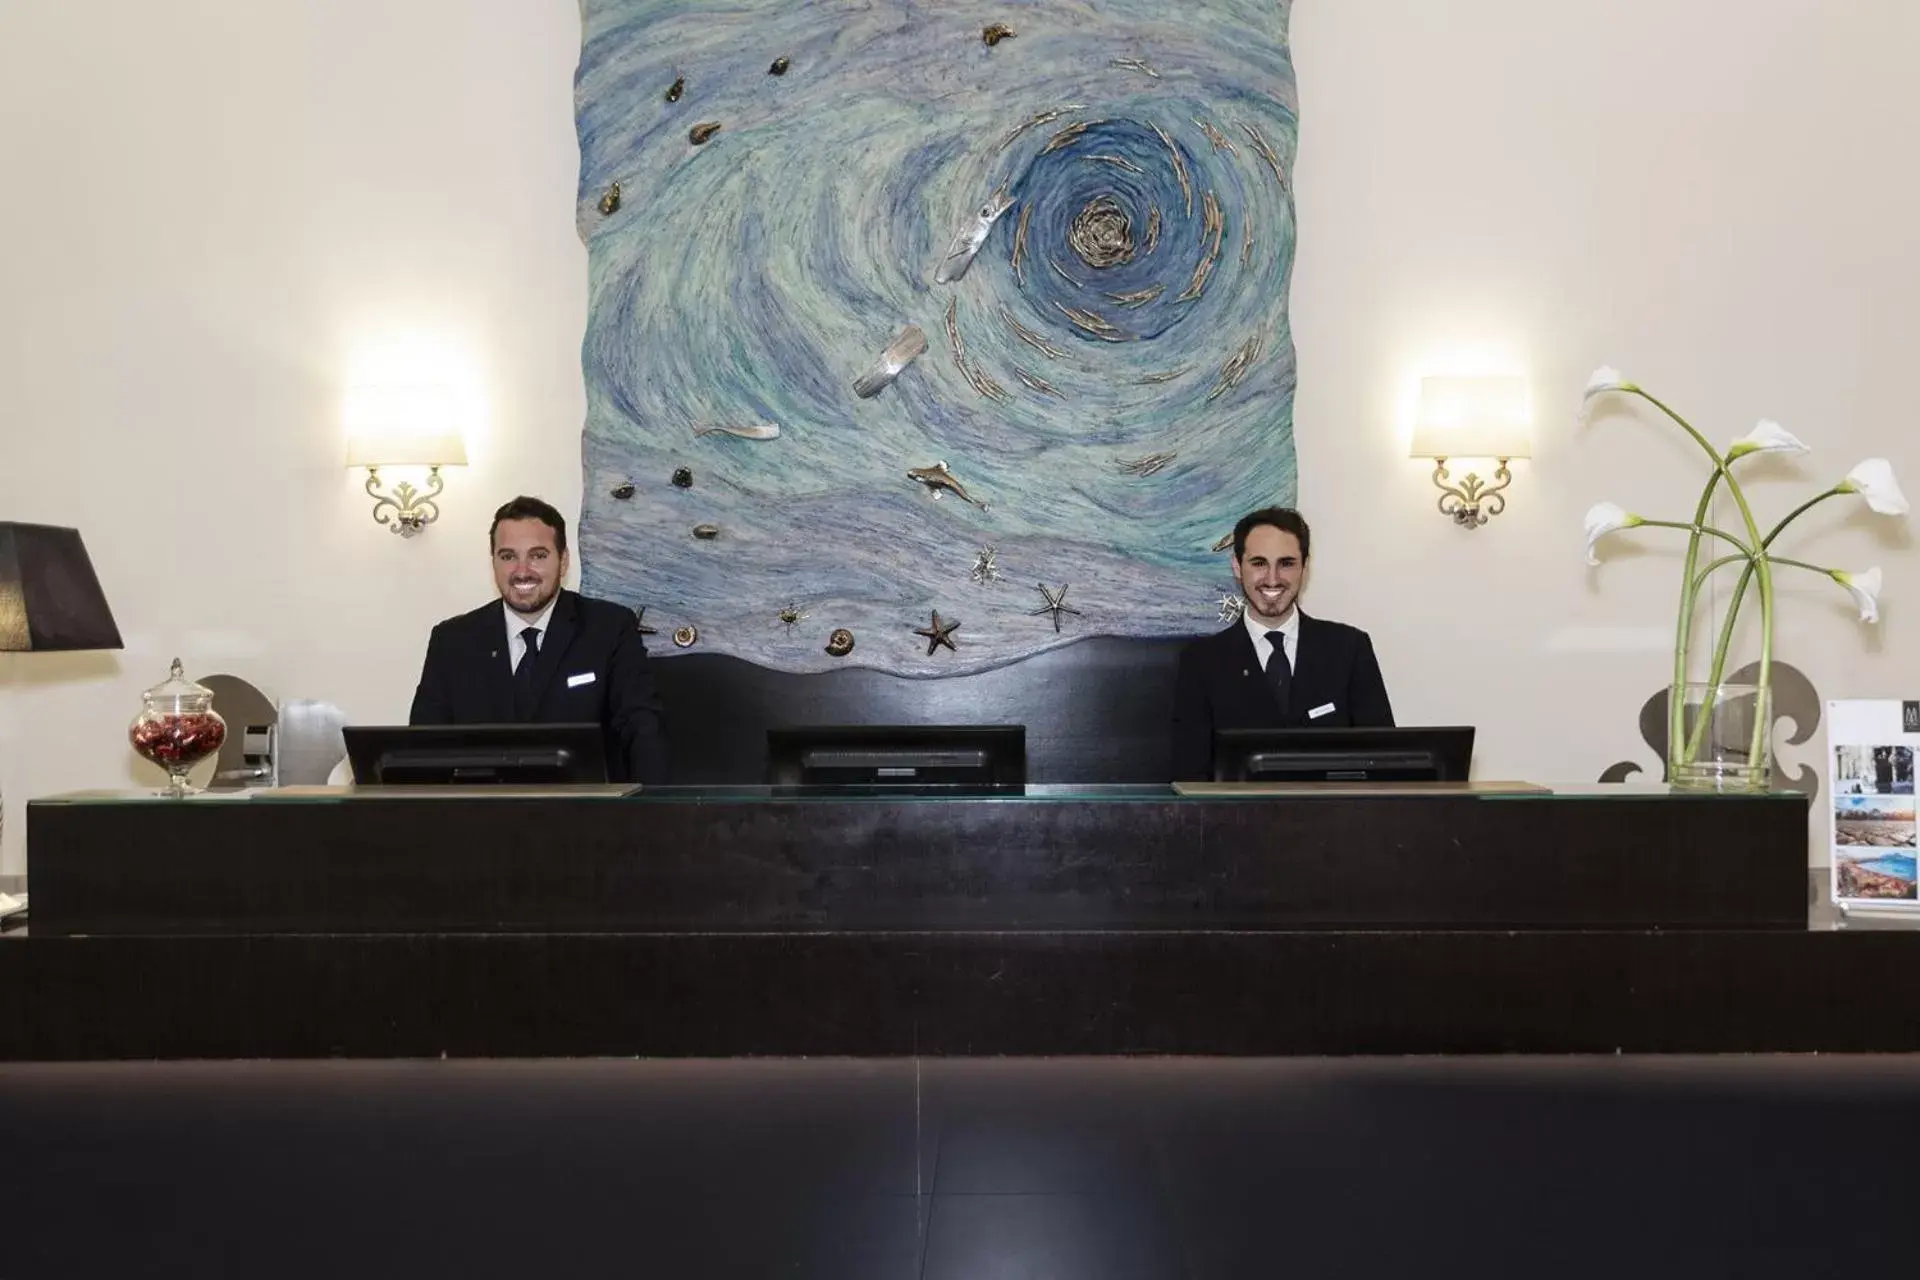 Staff in MGallery Palazzo Caracciolo Napoli - Hotel Collection